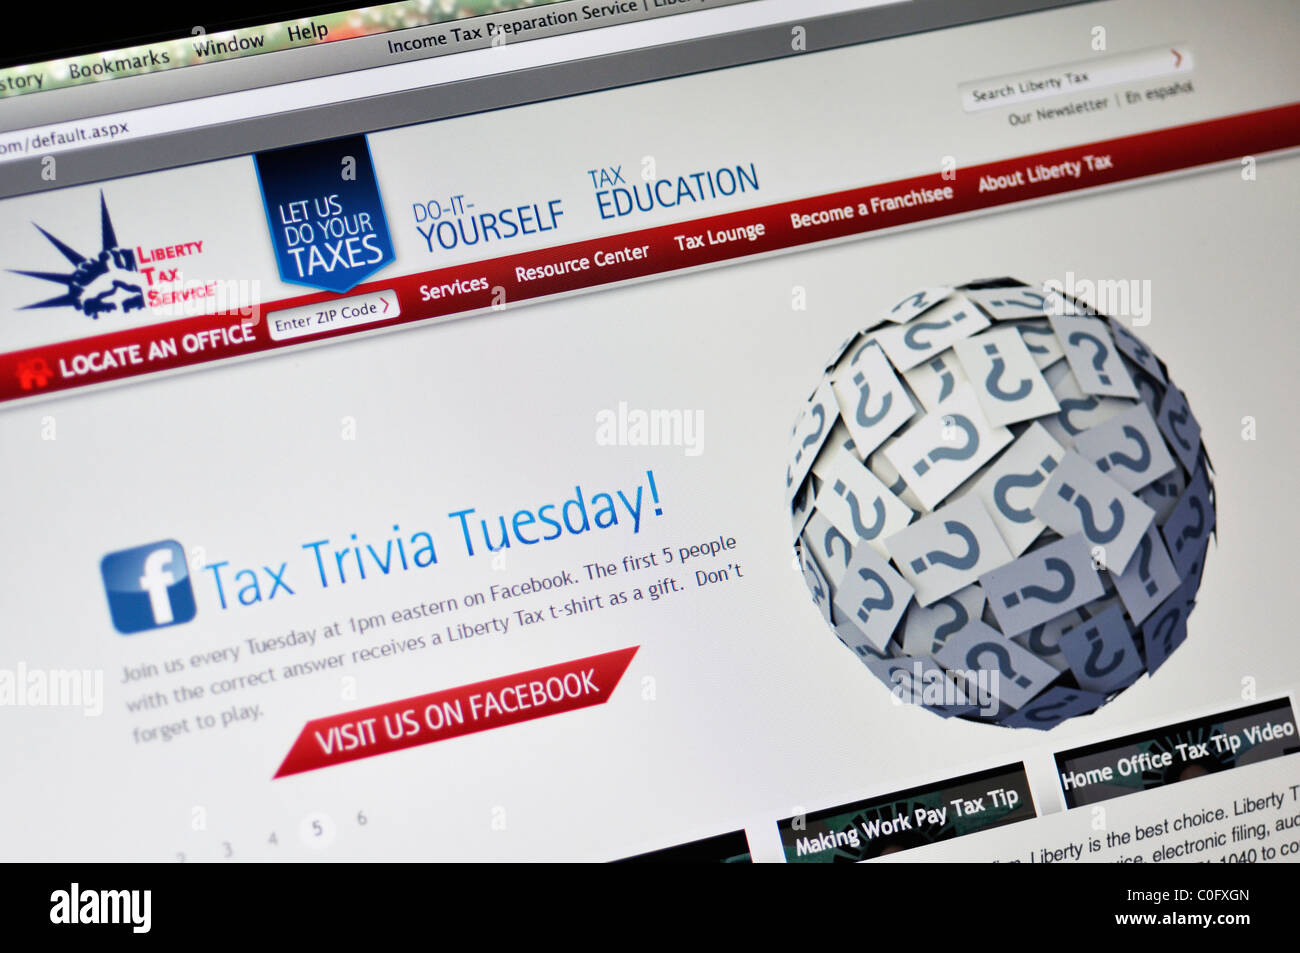 Liberty Tax Service - Einkommensteuer Vorbereitung Webseite Stockfoto